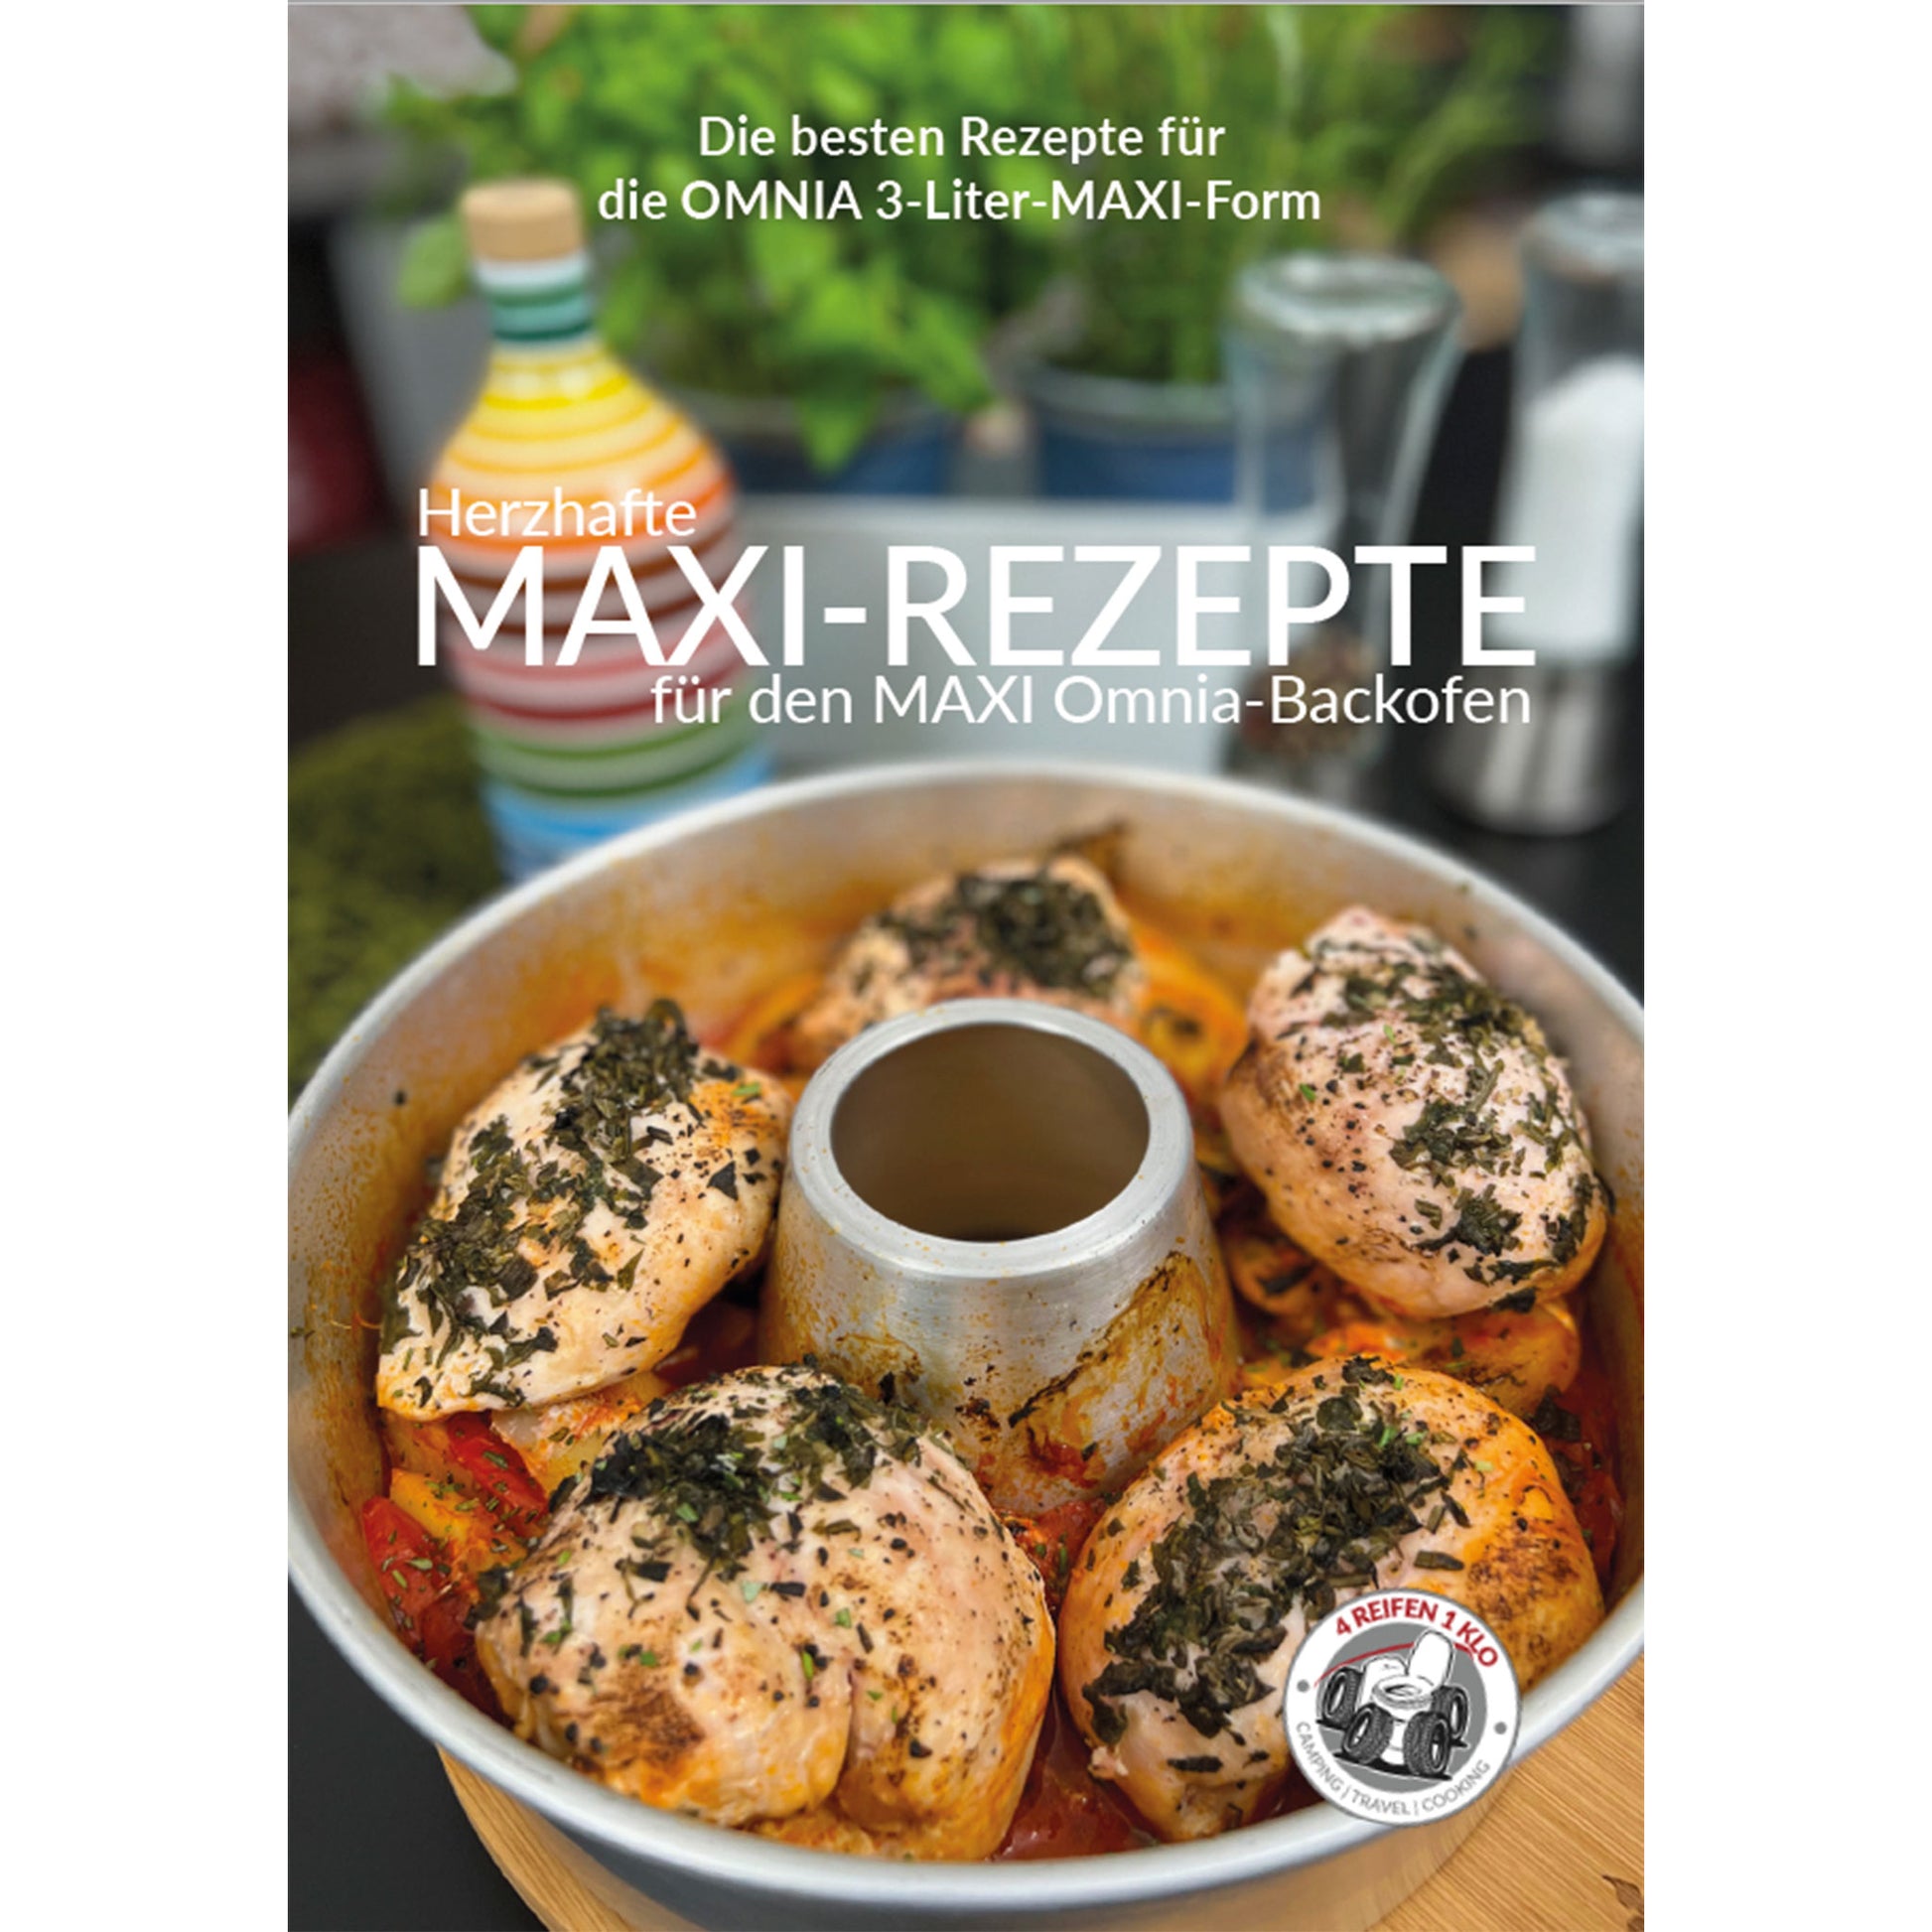 Herzhafte Maxi-Rezepte für den MAXI Omnia Backofen | 4 REIFEN 1 KLO